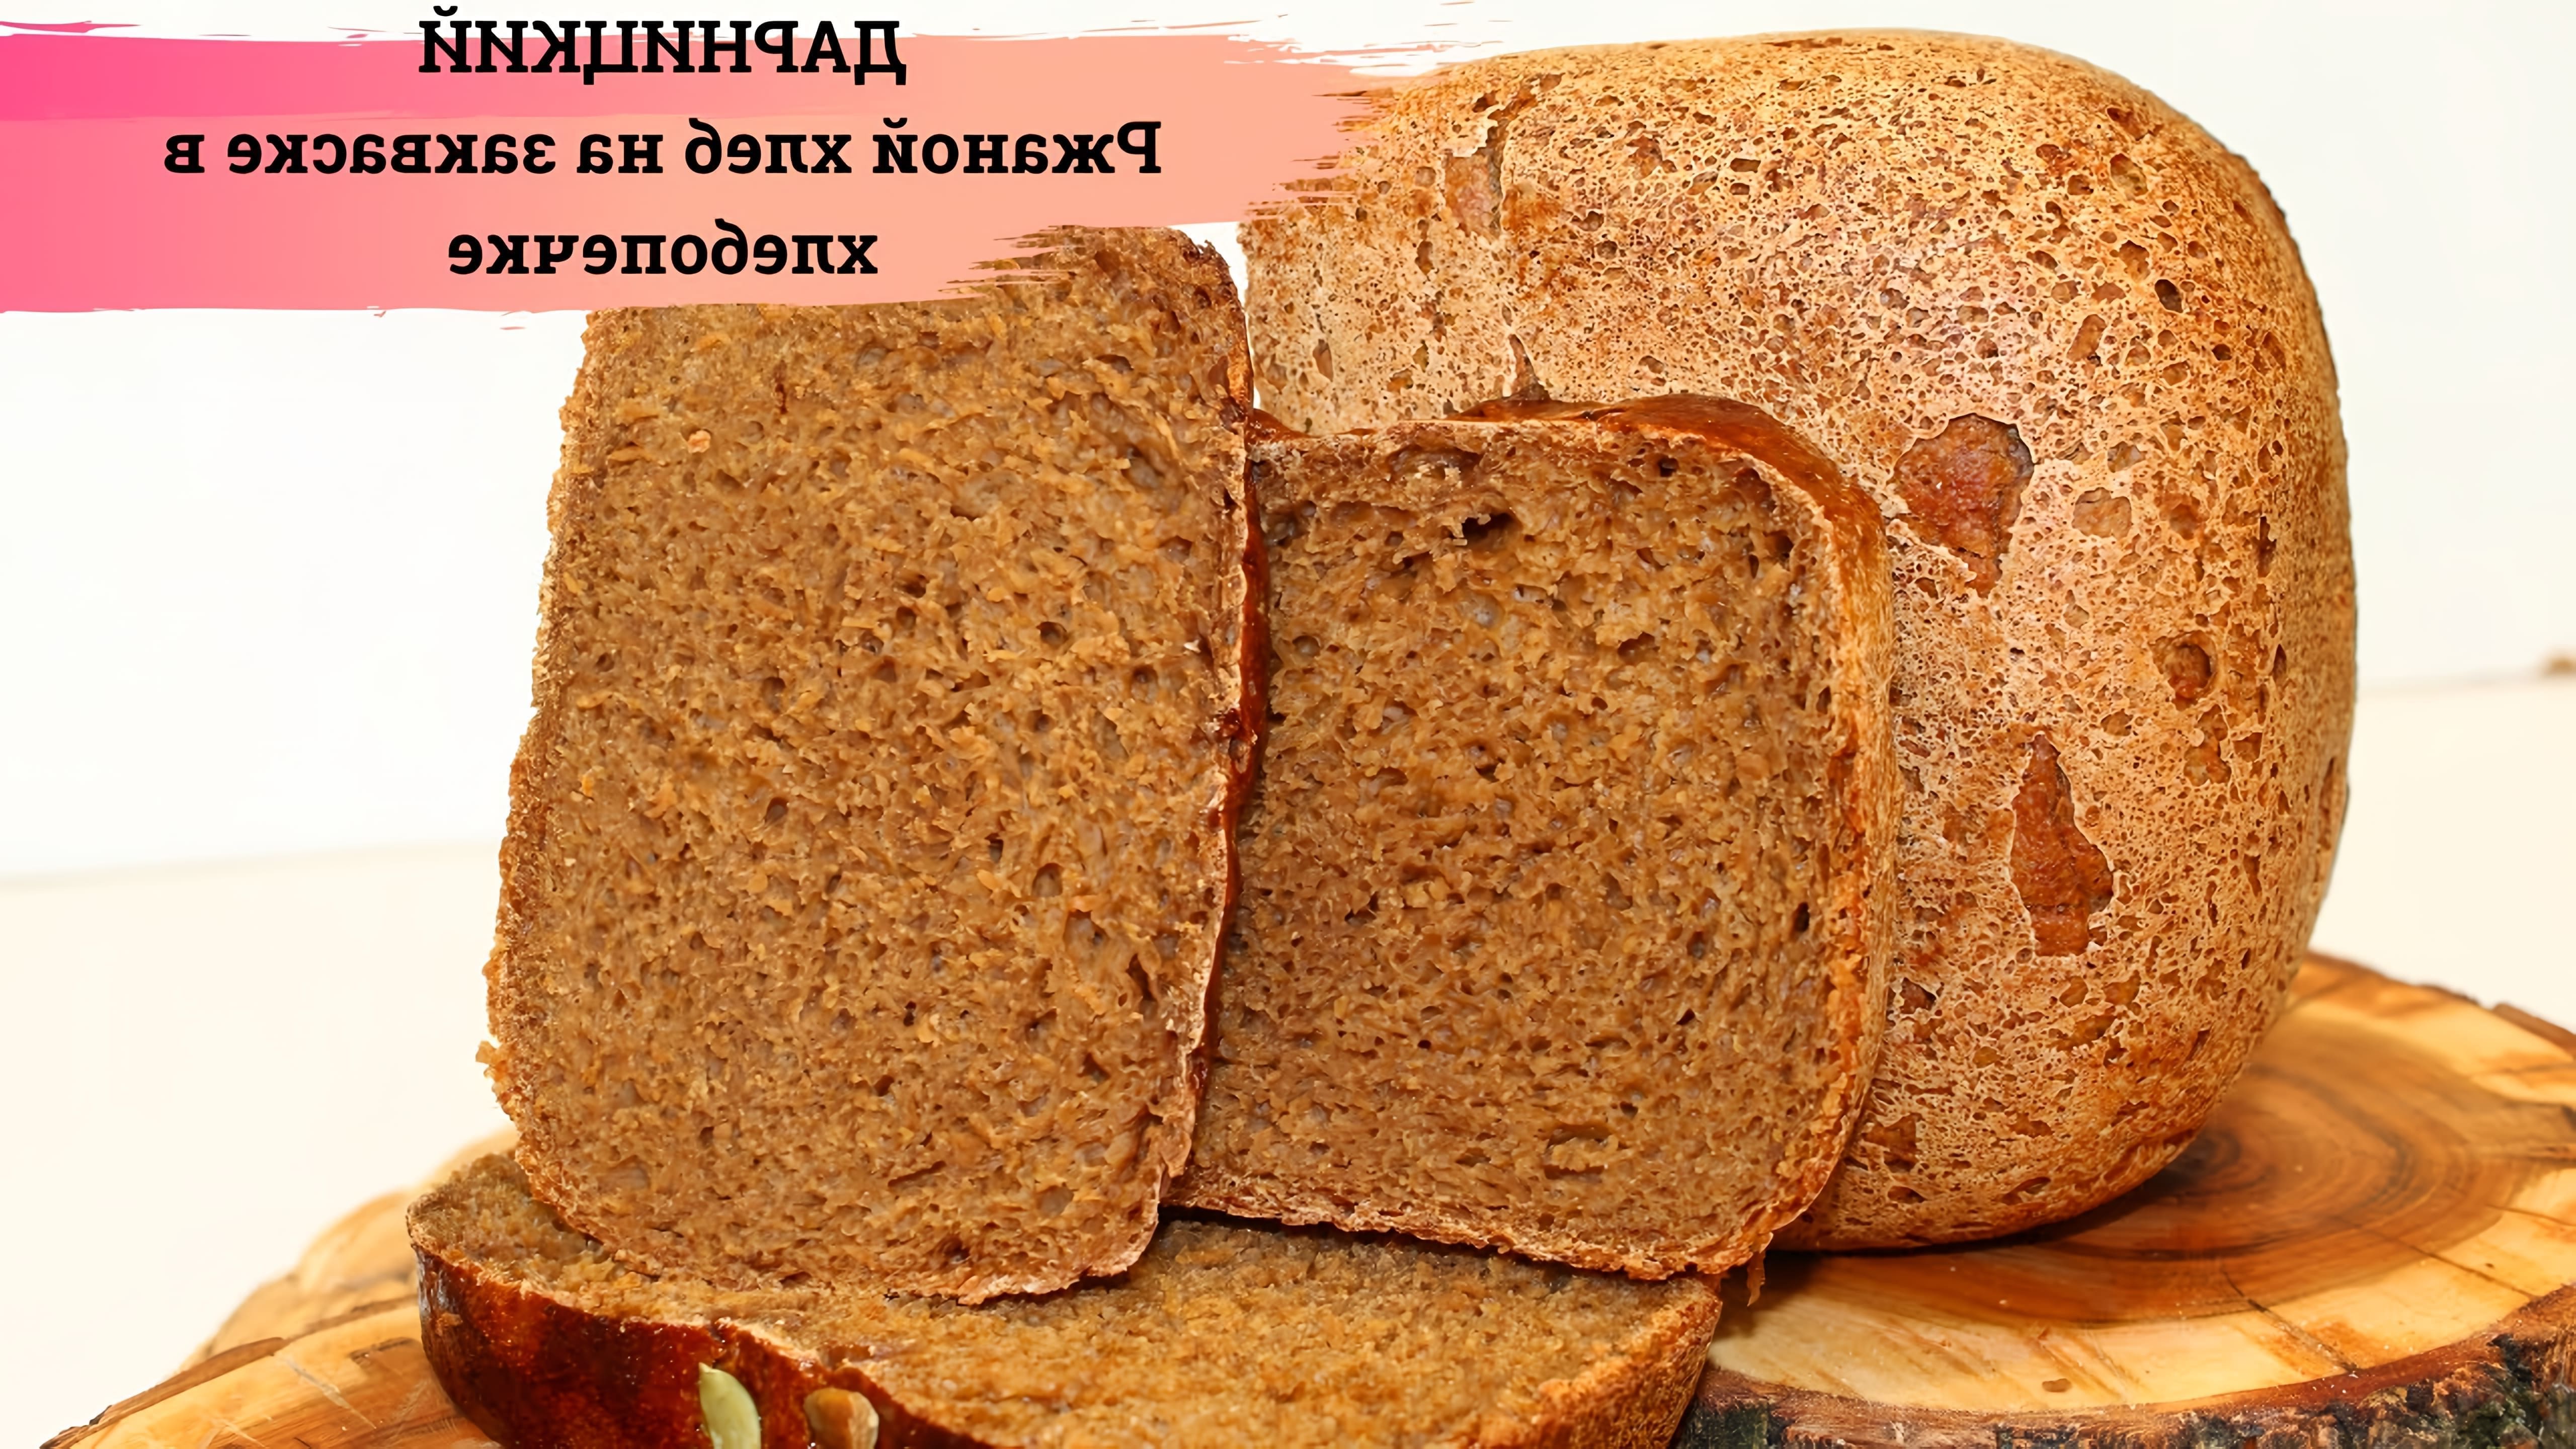 В этом видео демонстрируется процесс приготовления дарницкого хлеба на закваске в хлебопечке